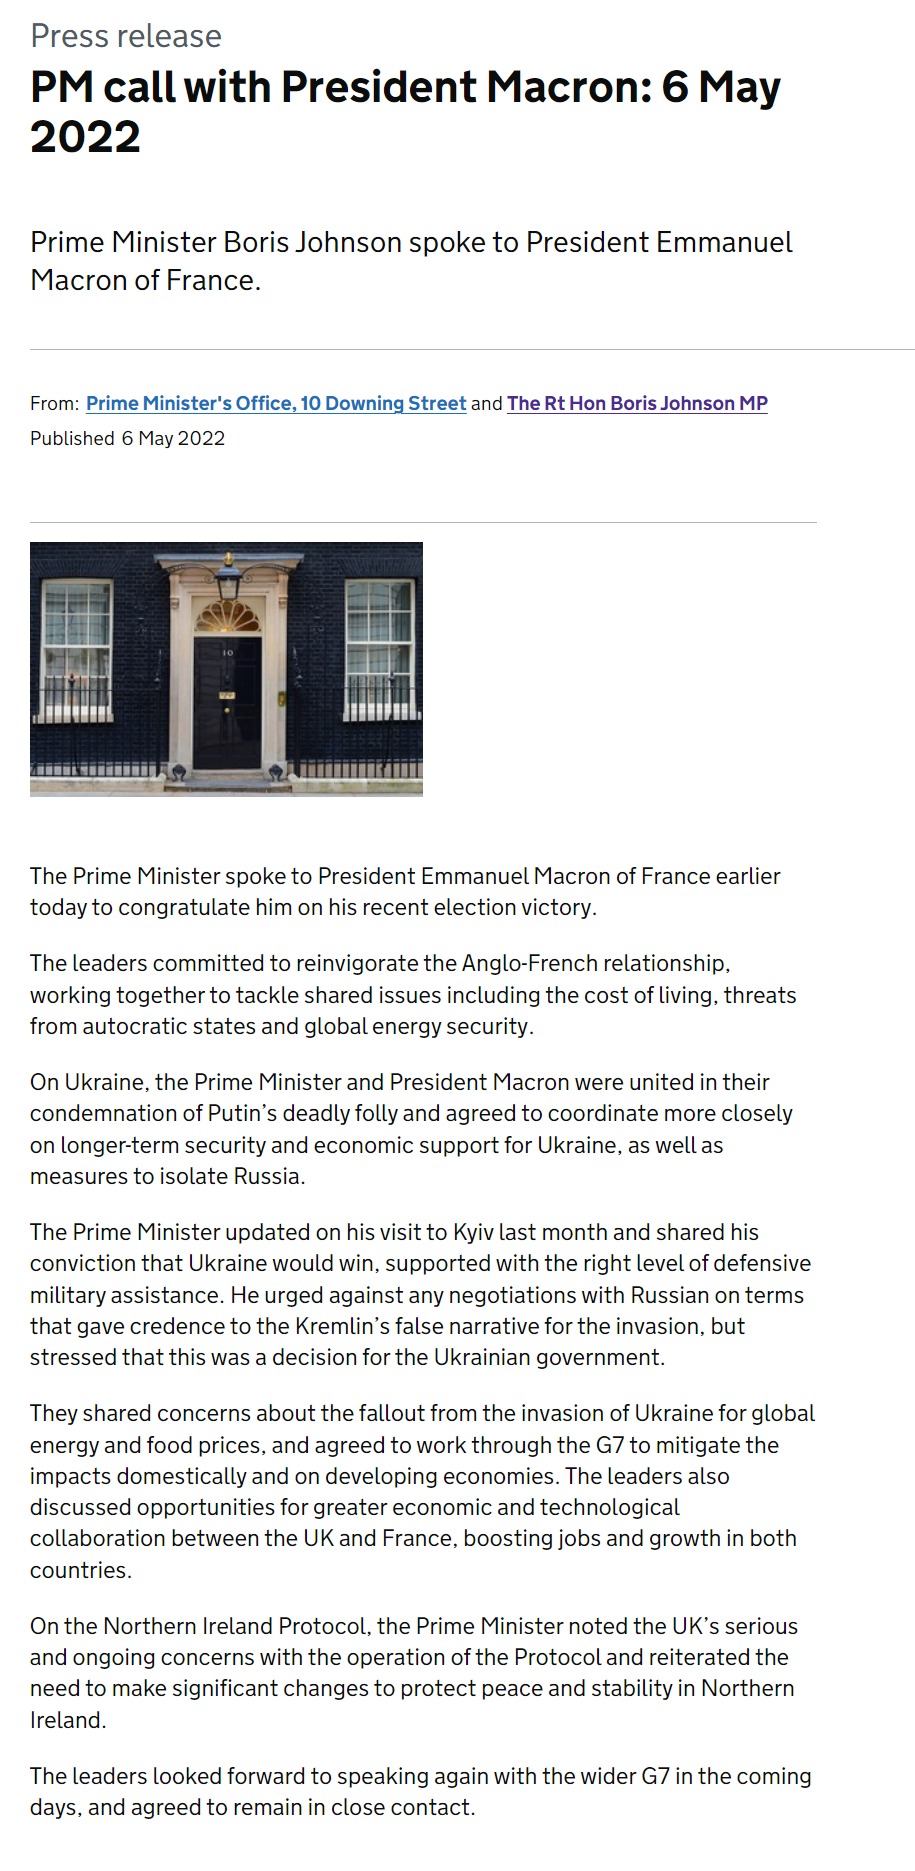 Скриншот с сайта британского правительства